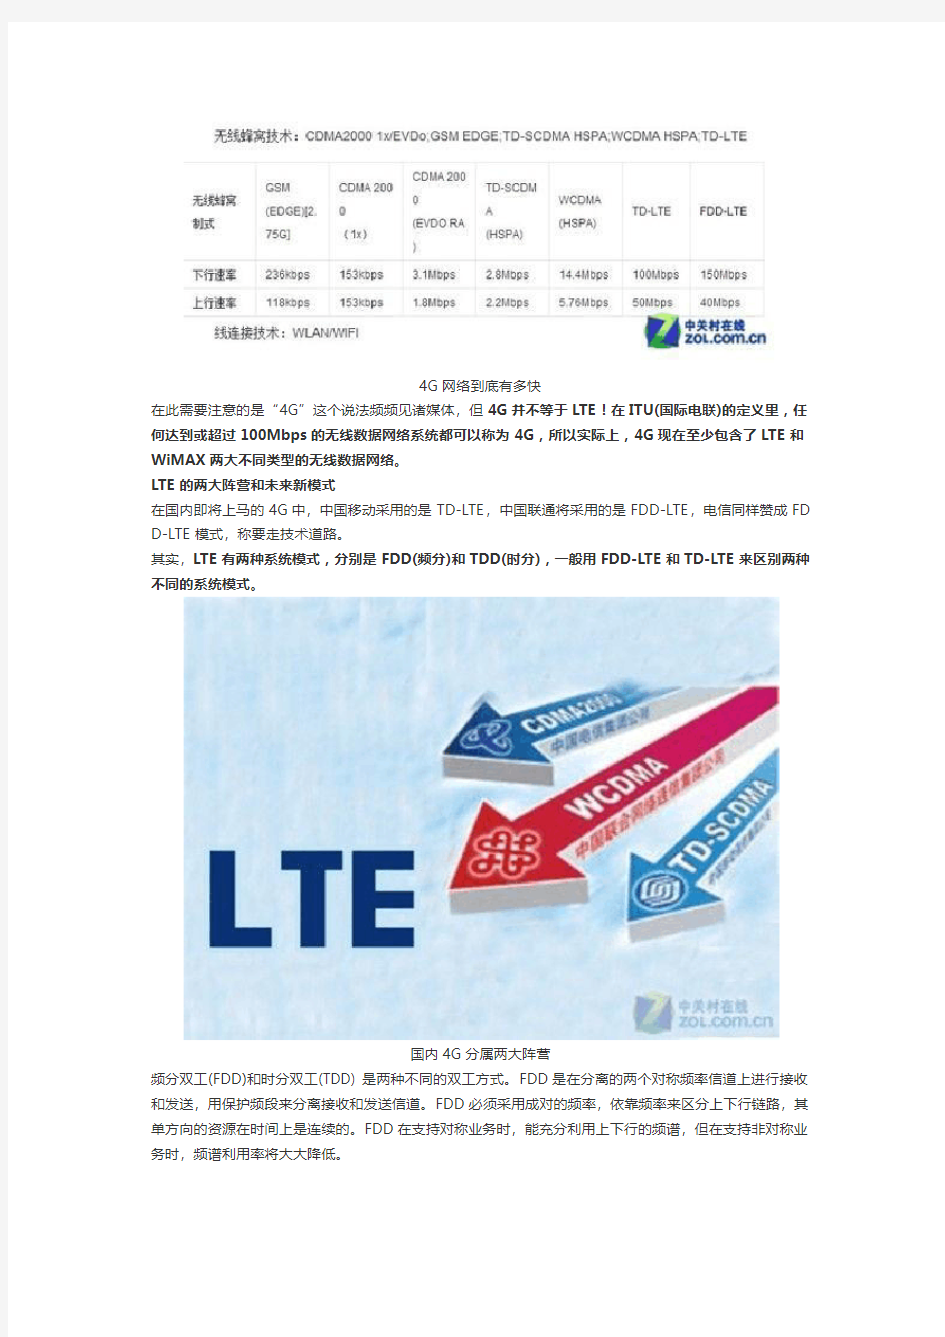 中国移动、中国联通、中国电信 4G TD-LTE和FDD-LT